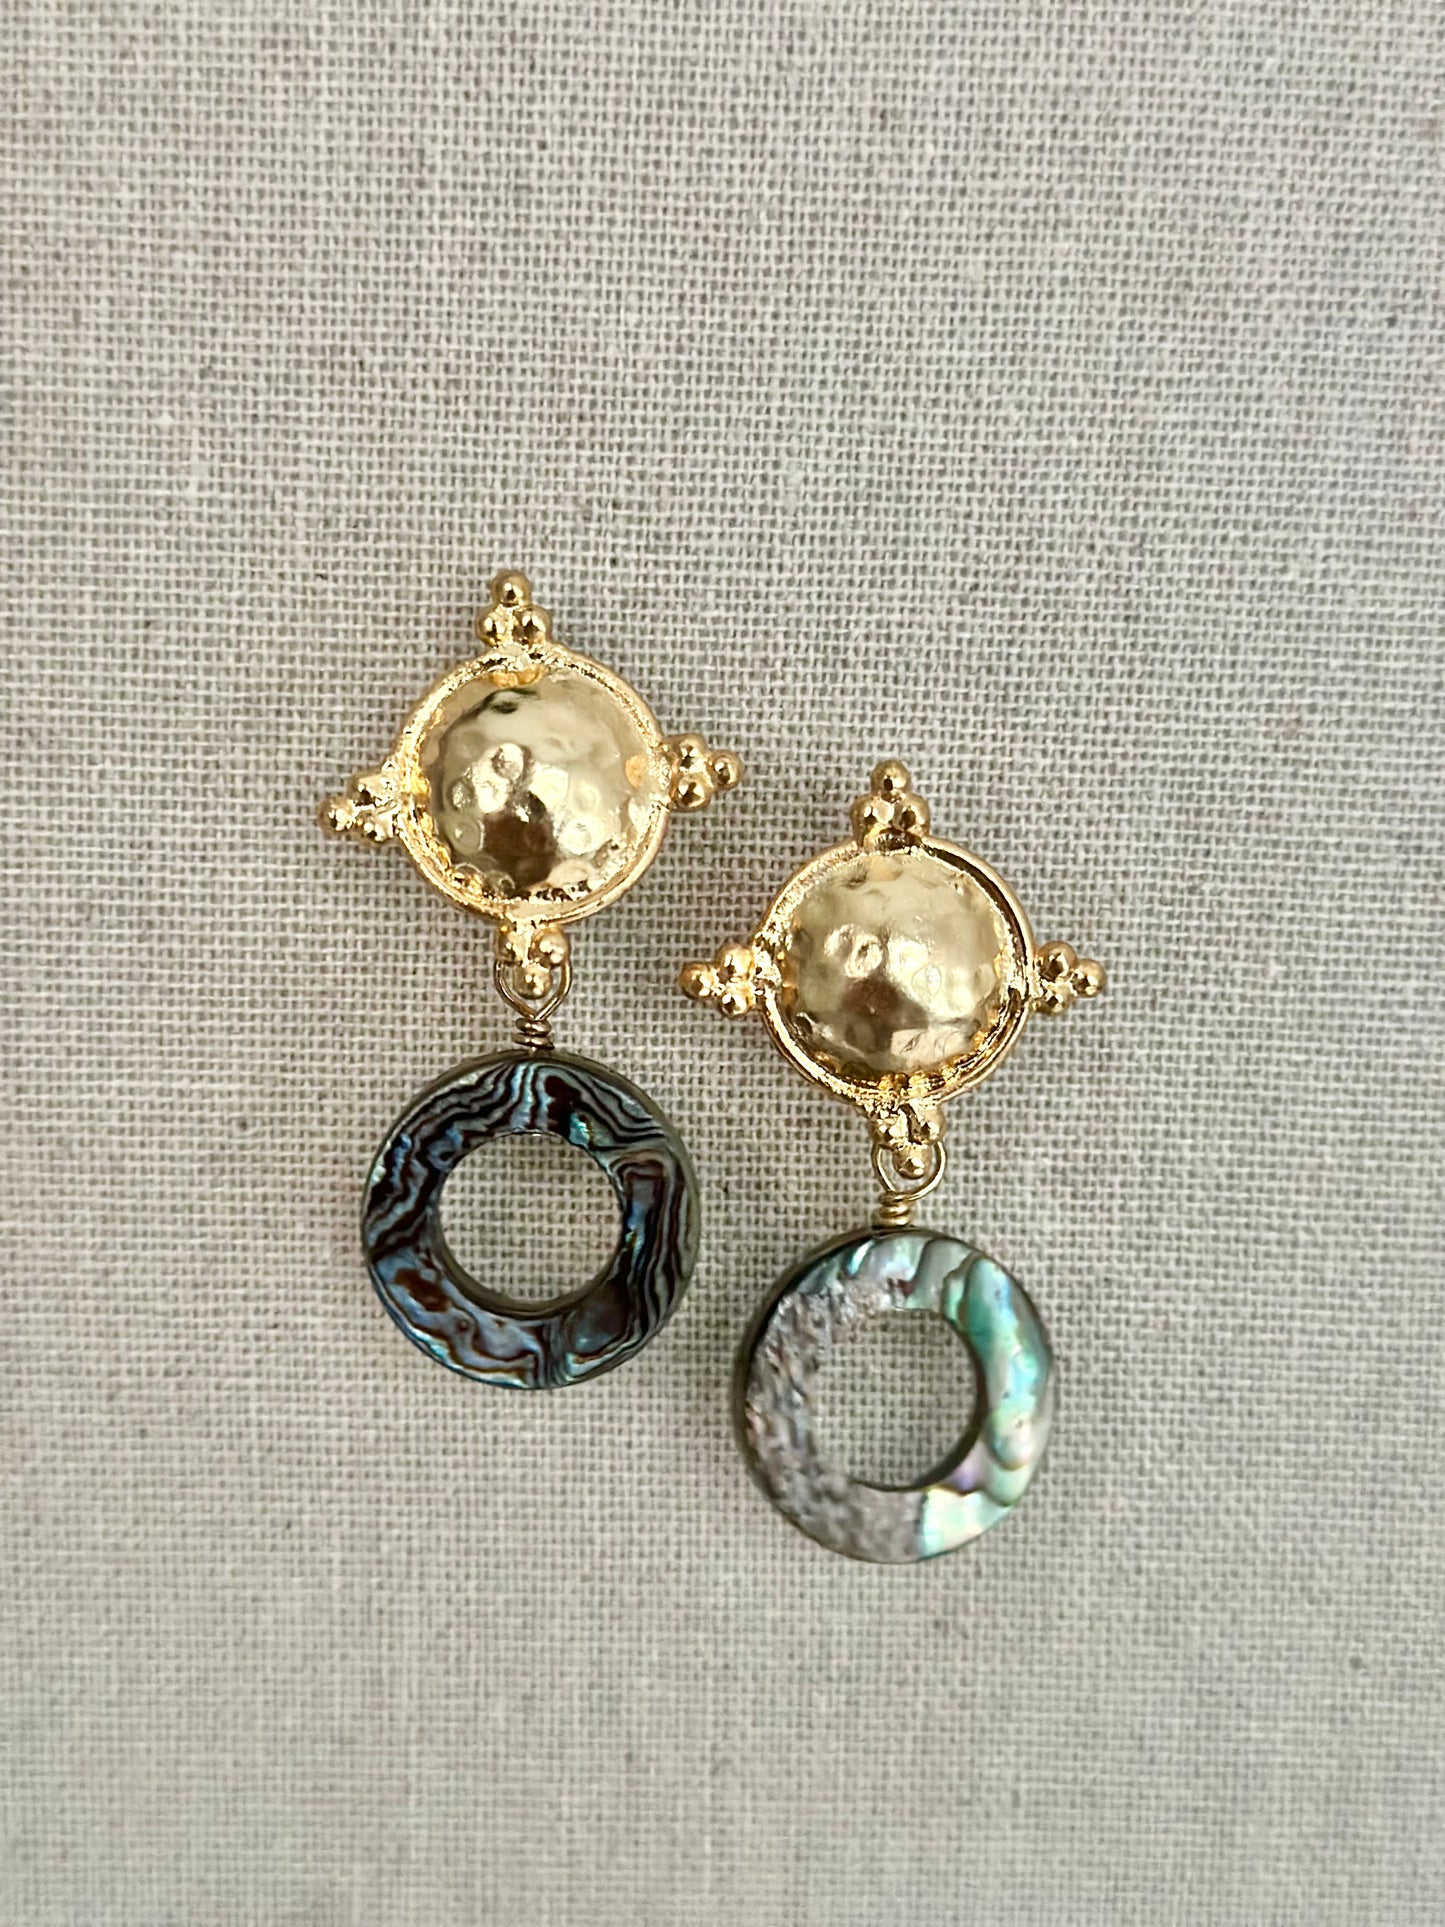 Quatrefoil abalone shell earrings